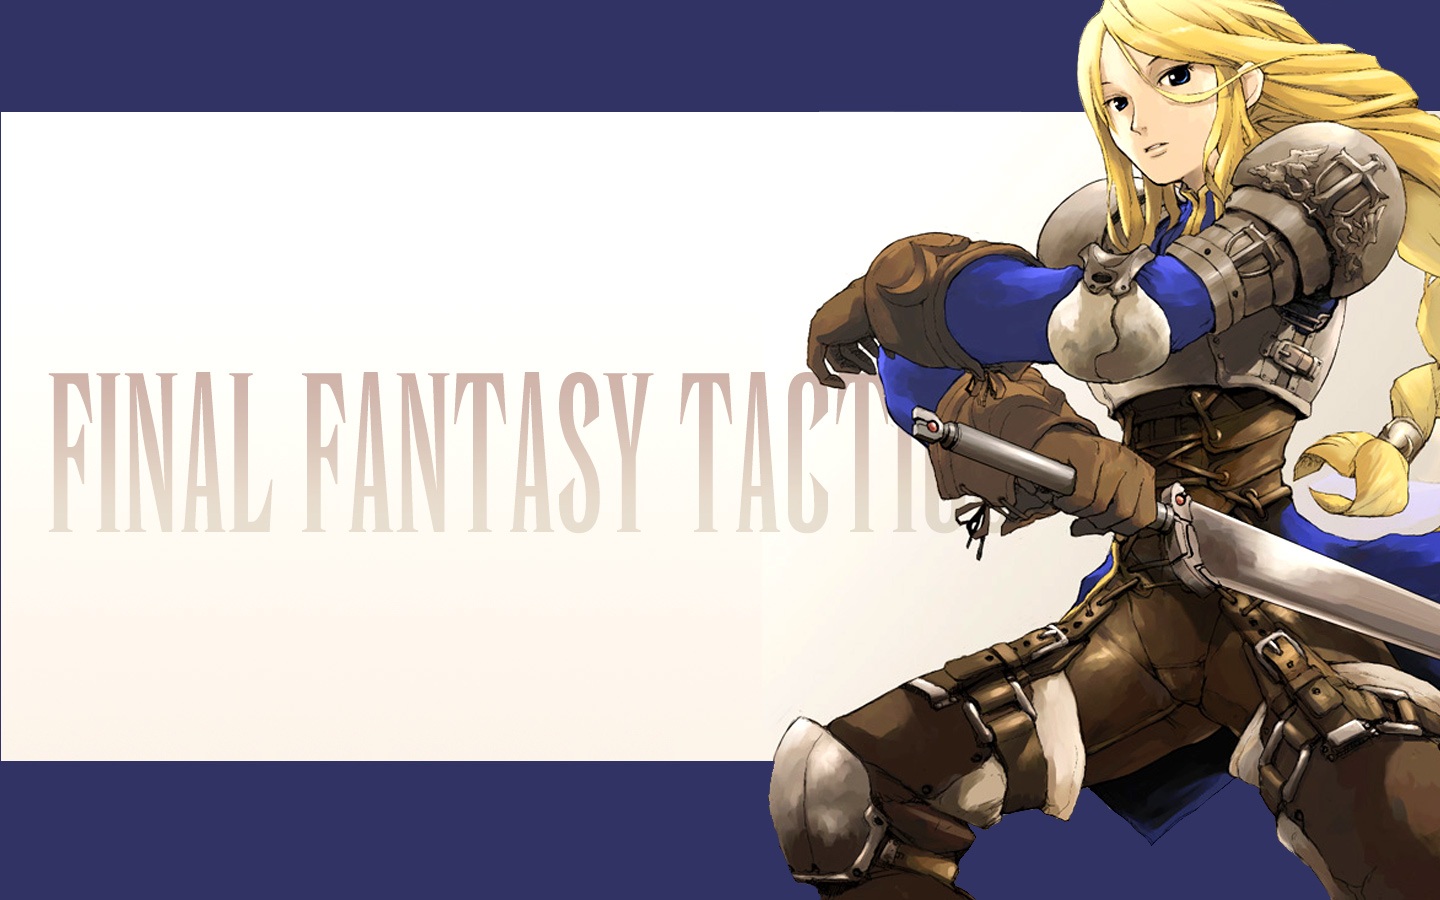 Final Fantasy Final Fantasy Tactics jeu vidéo Jeux